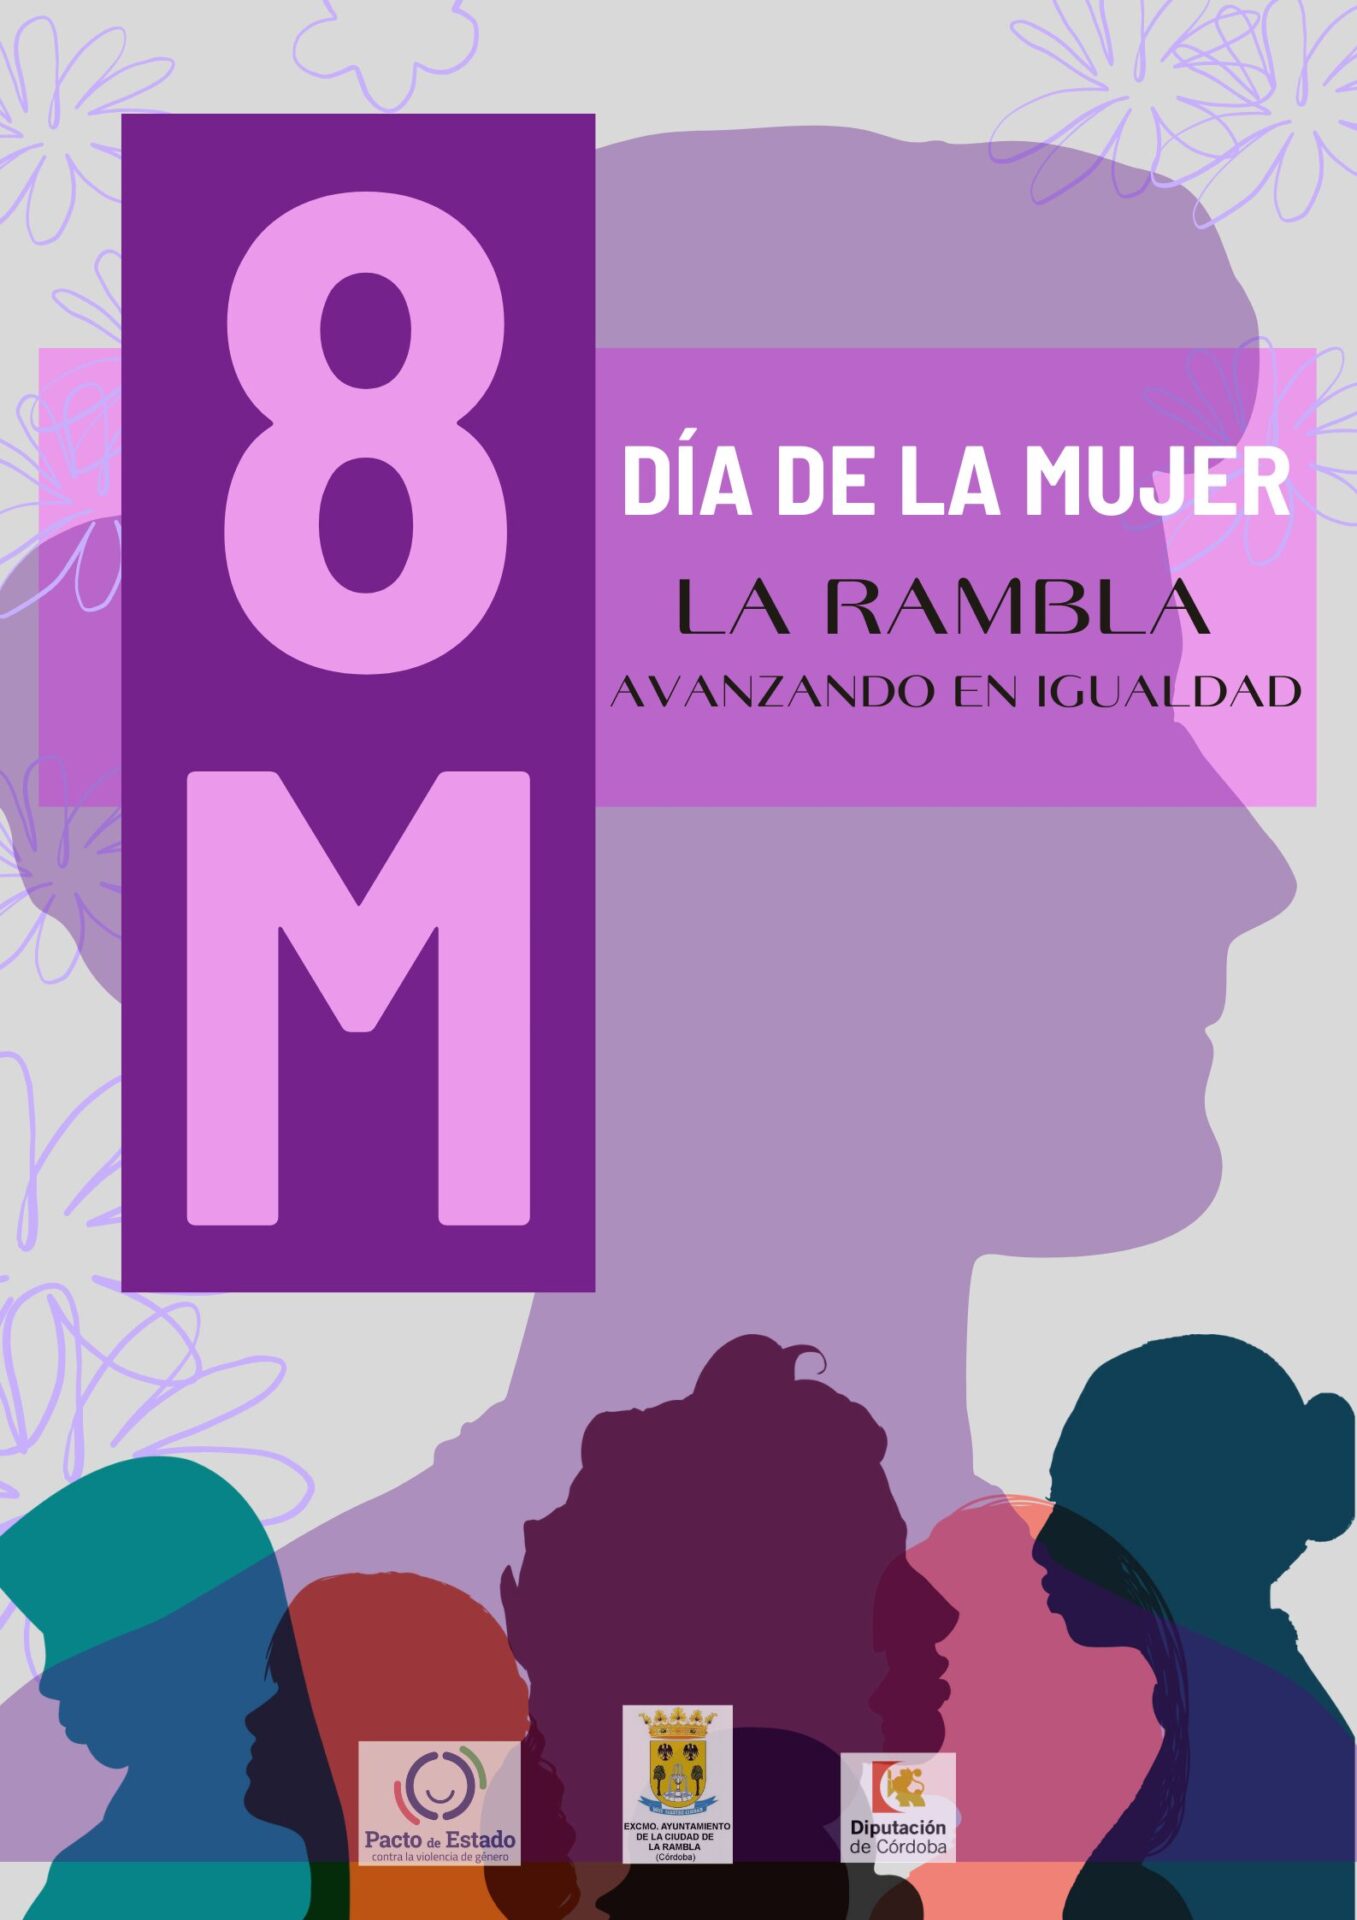 "La Rambla celebra el Día Internacional de la Mujer bajo el lema 'Avanzando en igualdad'"